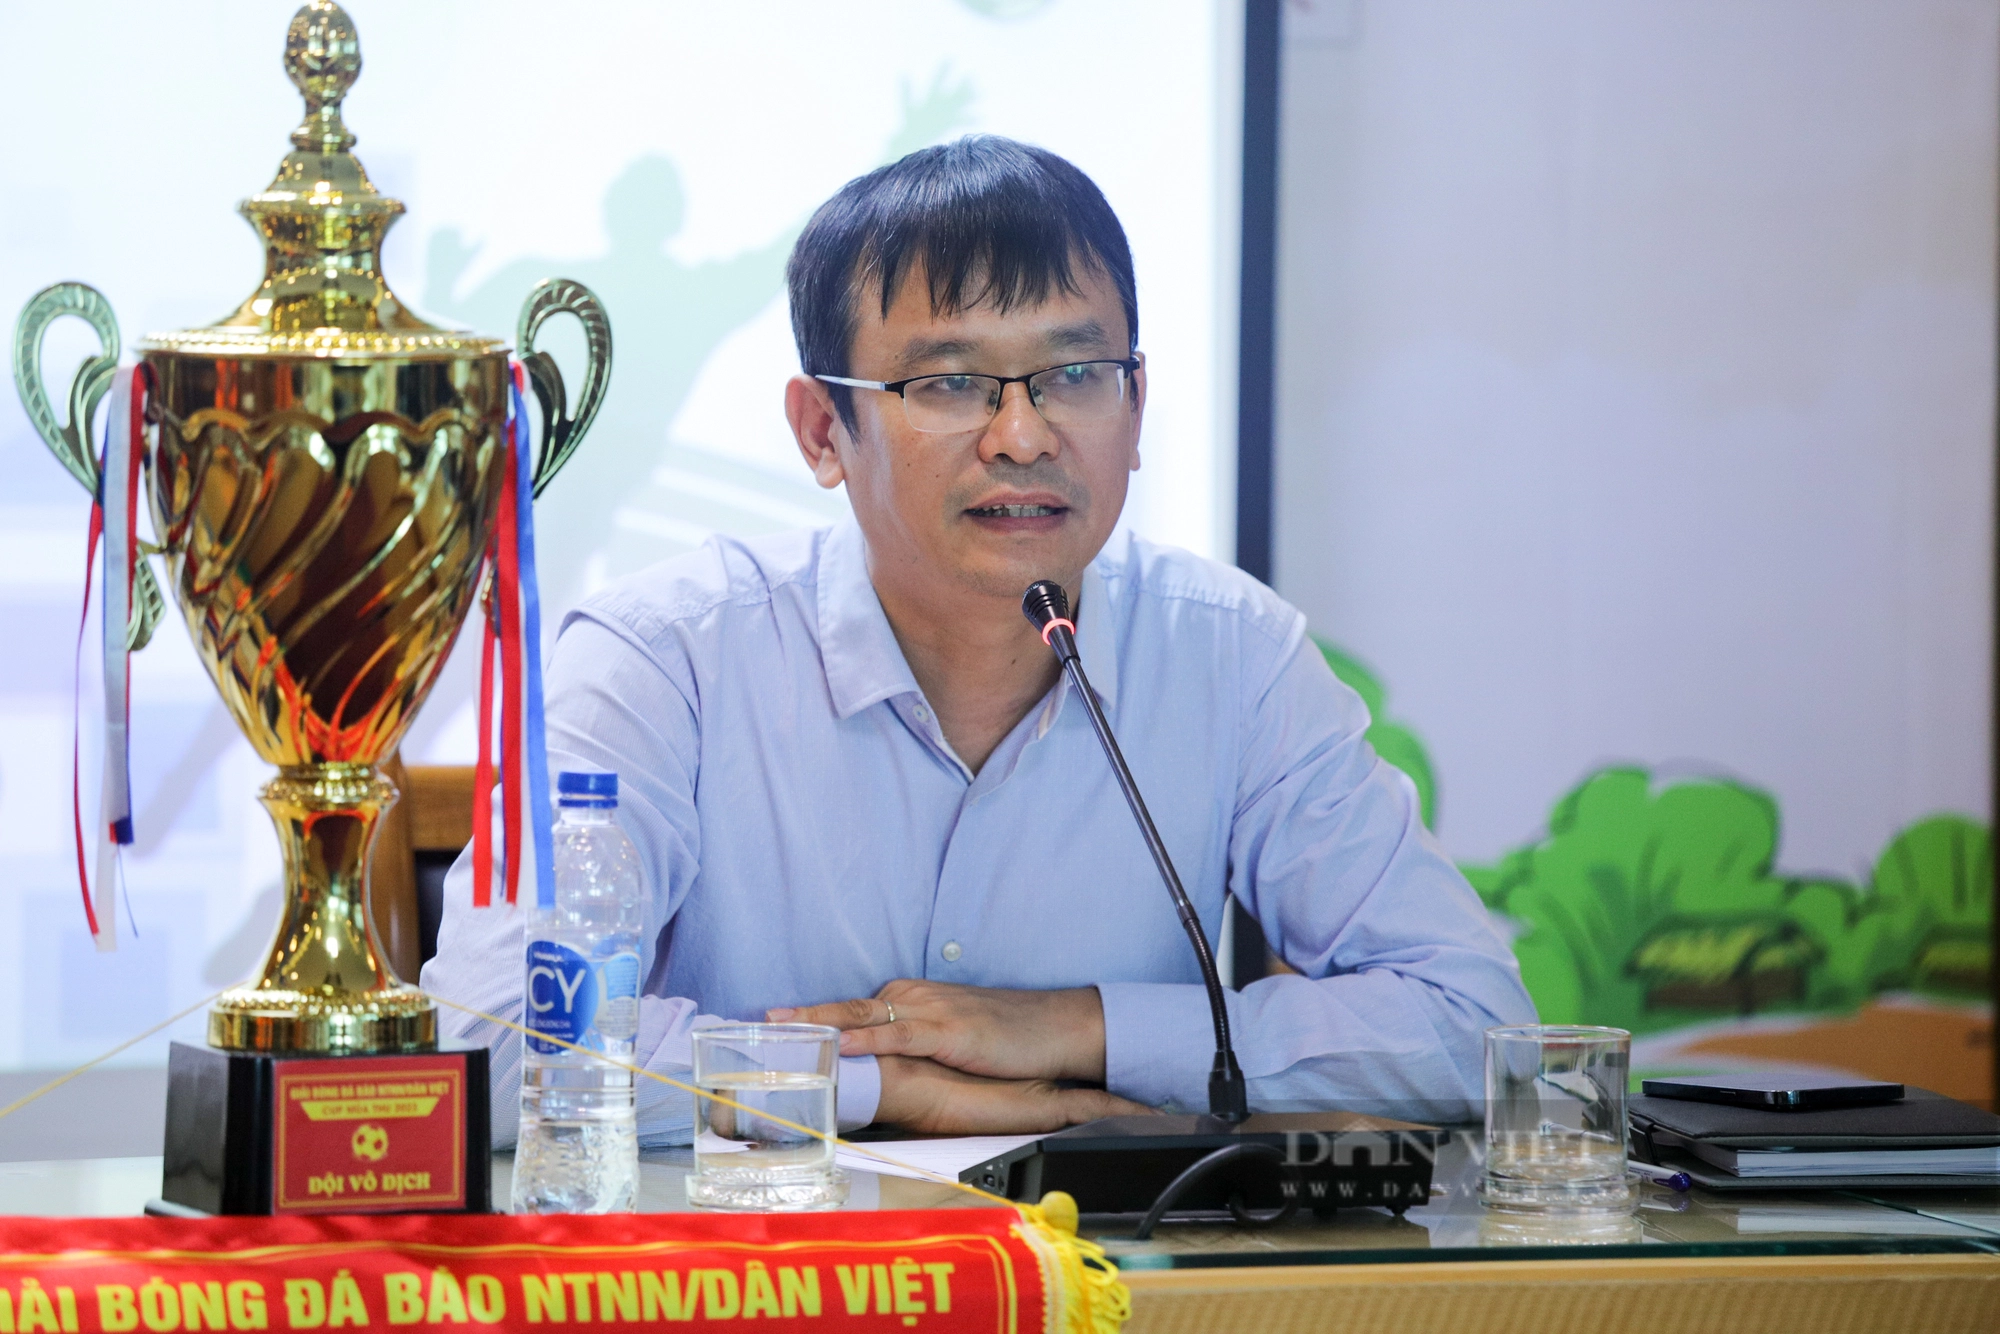 Họp báo và bốc thăm chia bảng Giải bóng đá Báo Nông thôn Ngày nay/Dân Việt - Ảnh 3.